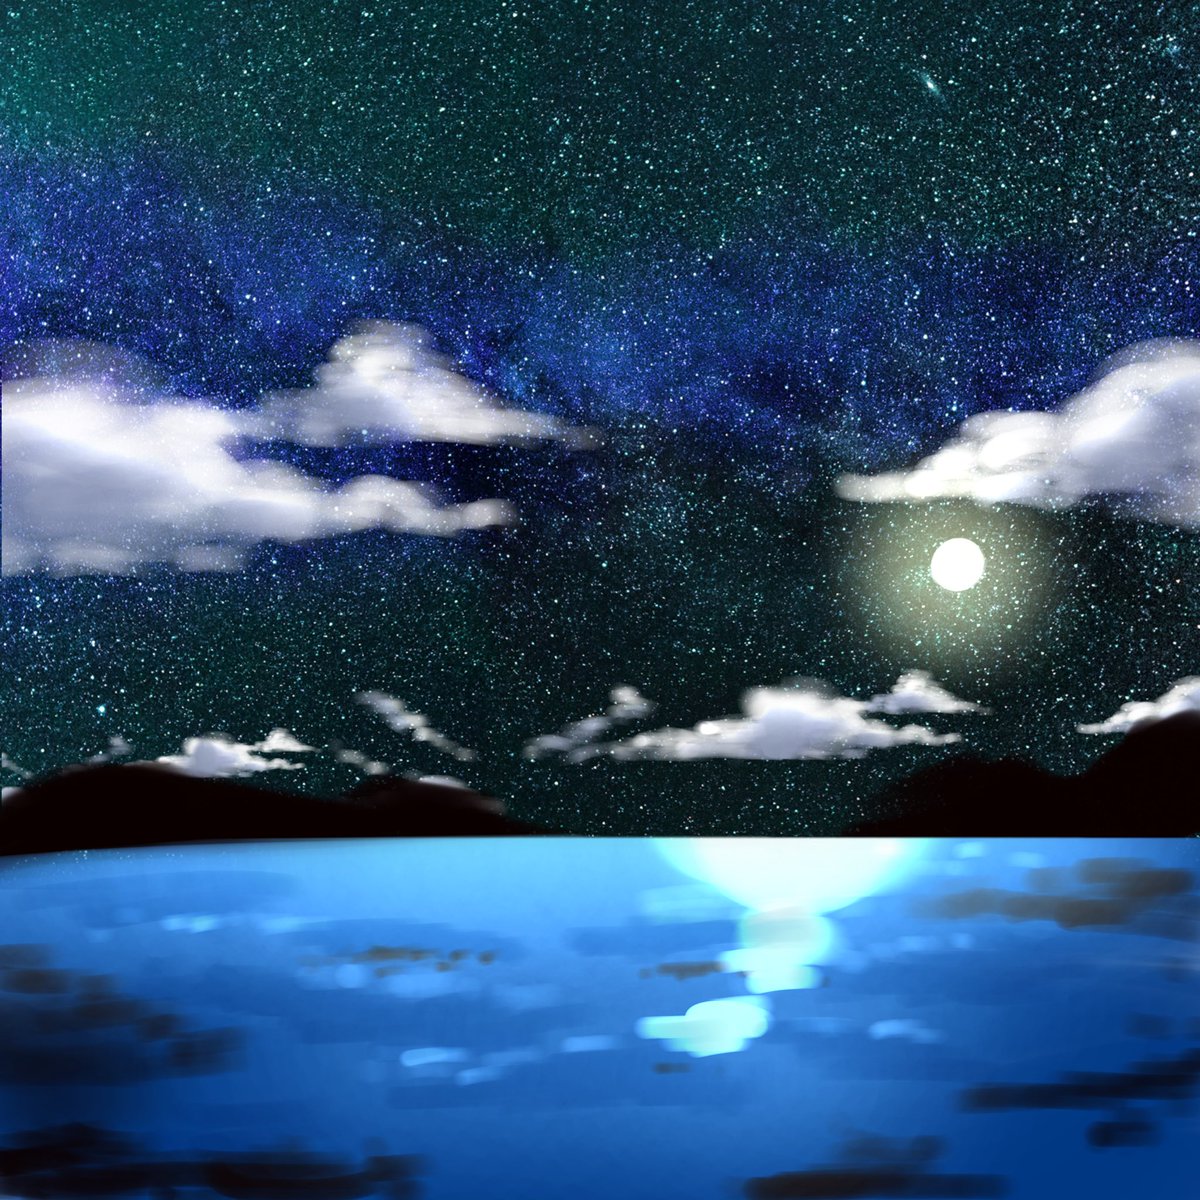 九曜 紗千 No Twitter 月夜の海 暇つぶしに描いてた背景画です イラスト 風景 夜 月 Ibispaint